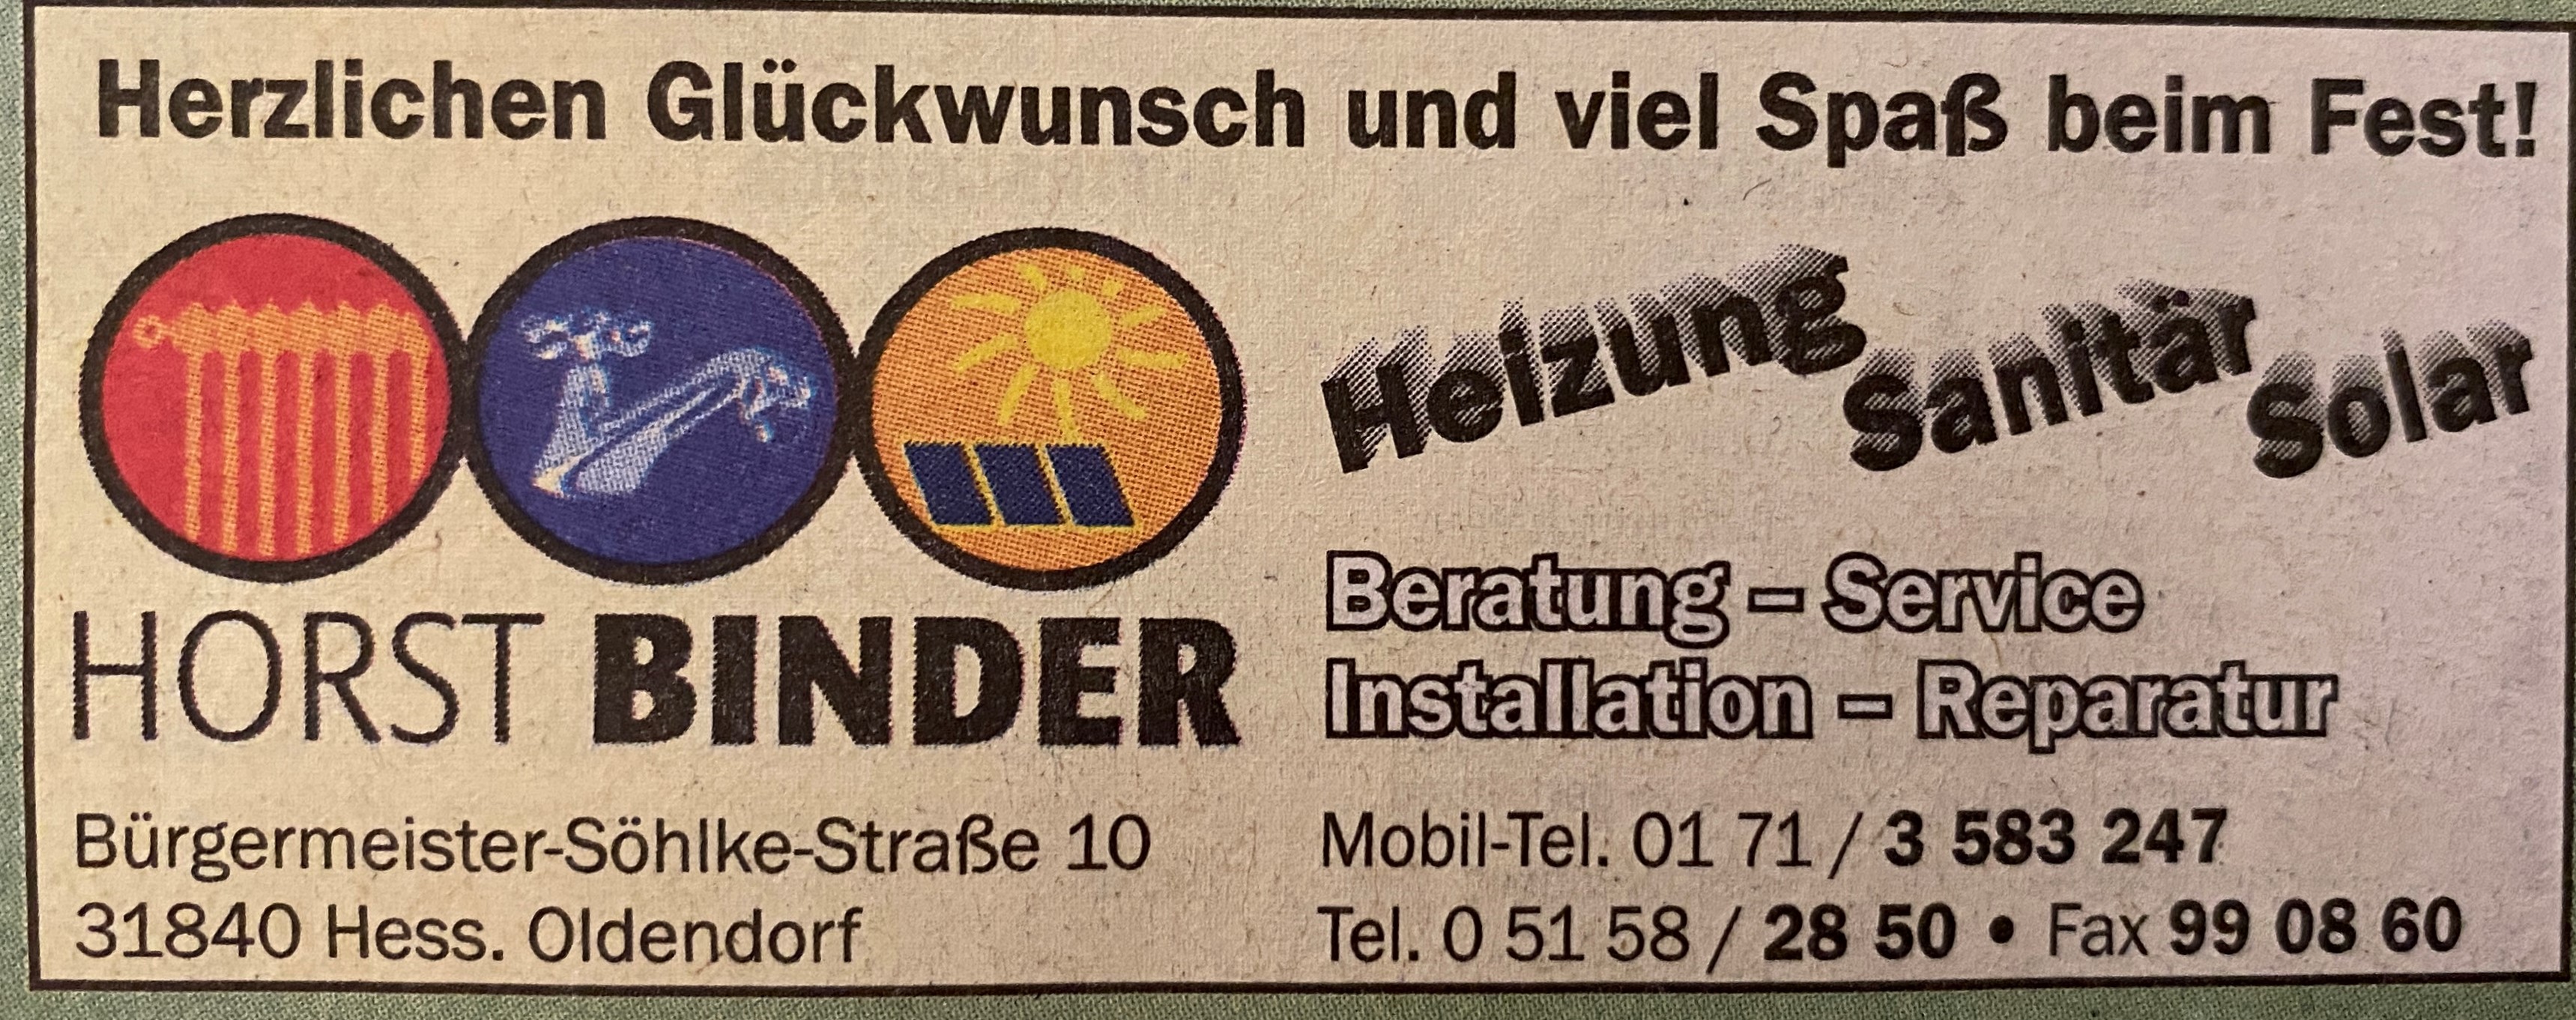 Bild 1 Binder Heizung Sanitär Solar in Hessisch Oldendorf